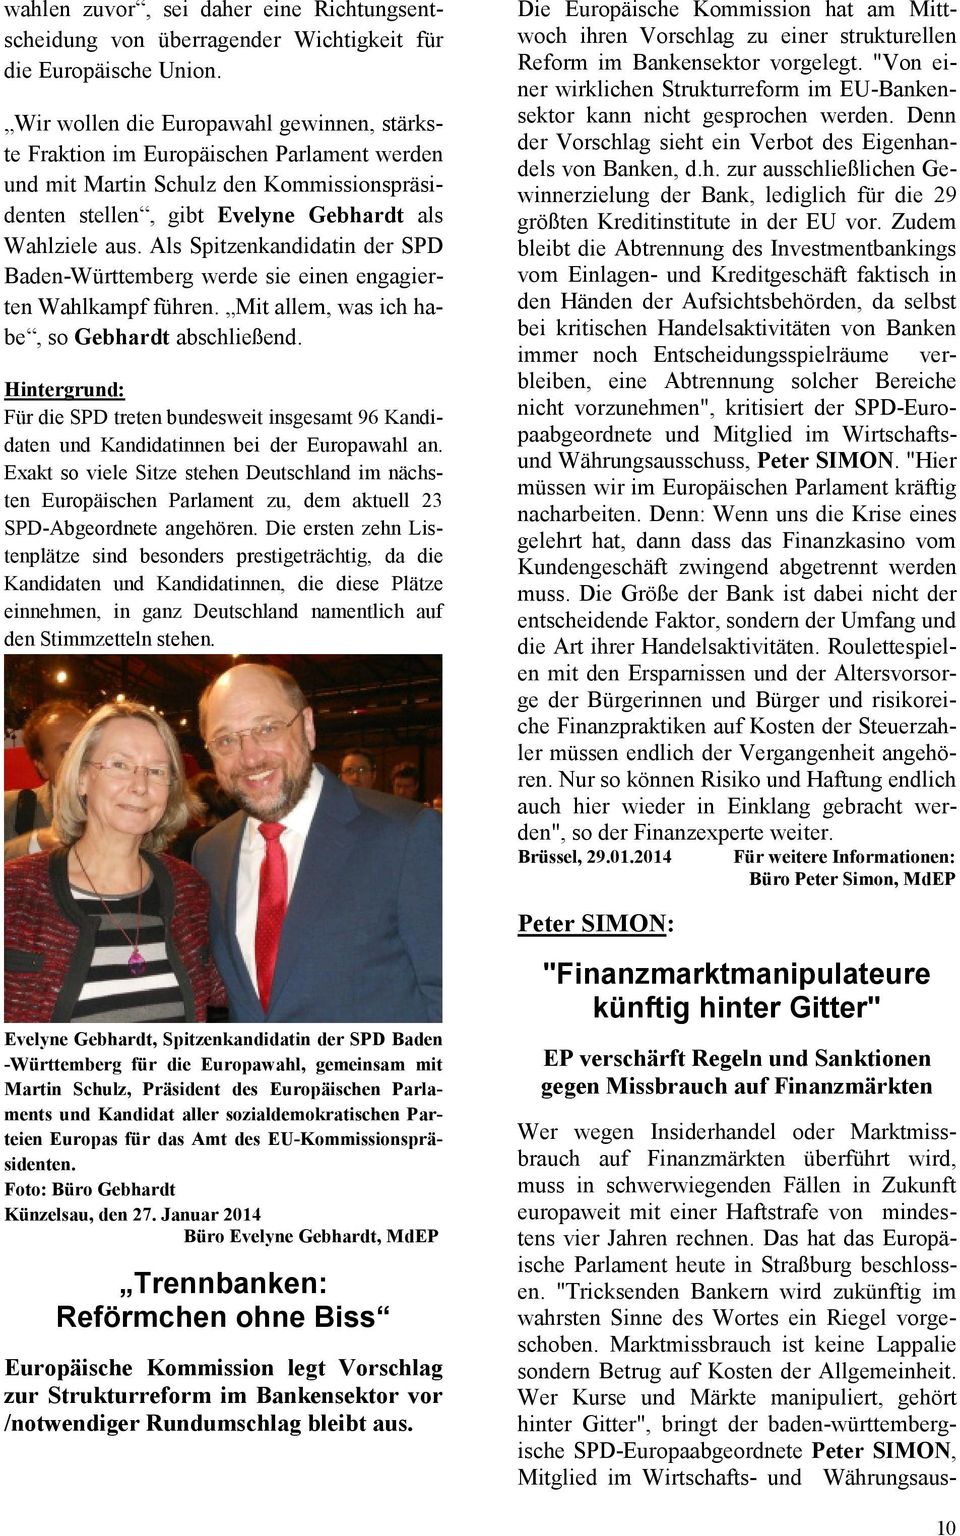 Als Spitzenkandidatin der SPD Baden-Württemberg werde sie einen engagierten Wahlkampf führen. Mit allem, was ich habe, so Gebhardt abschließend.